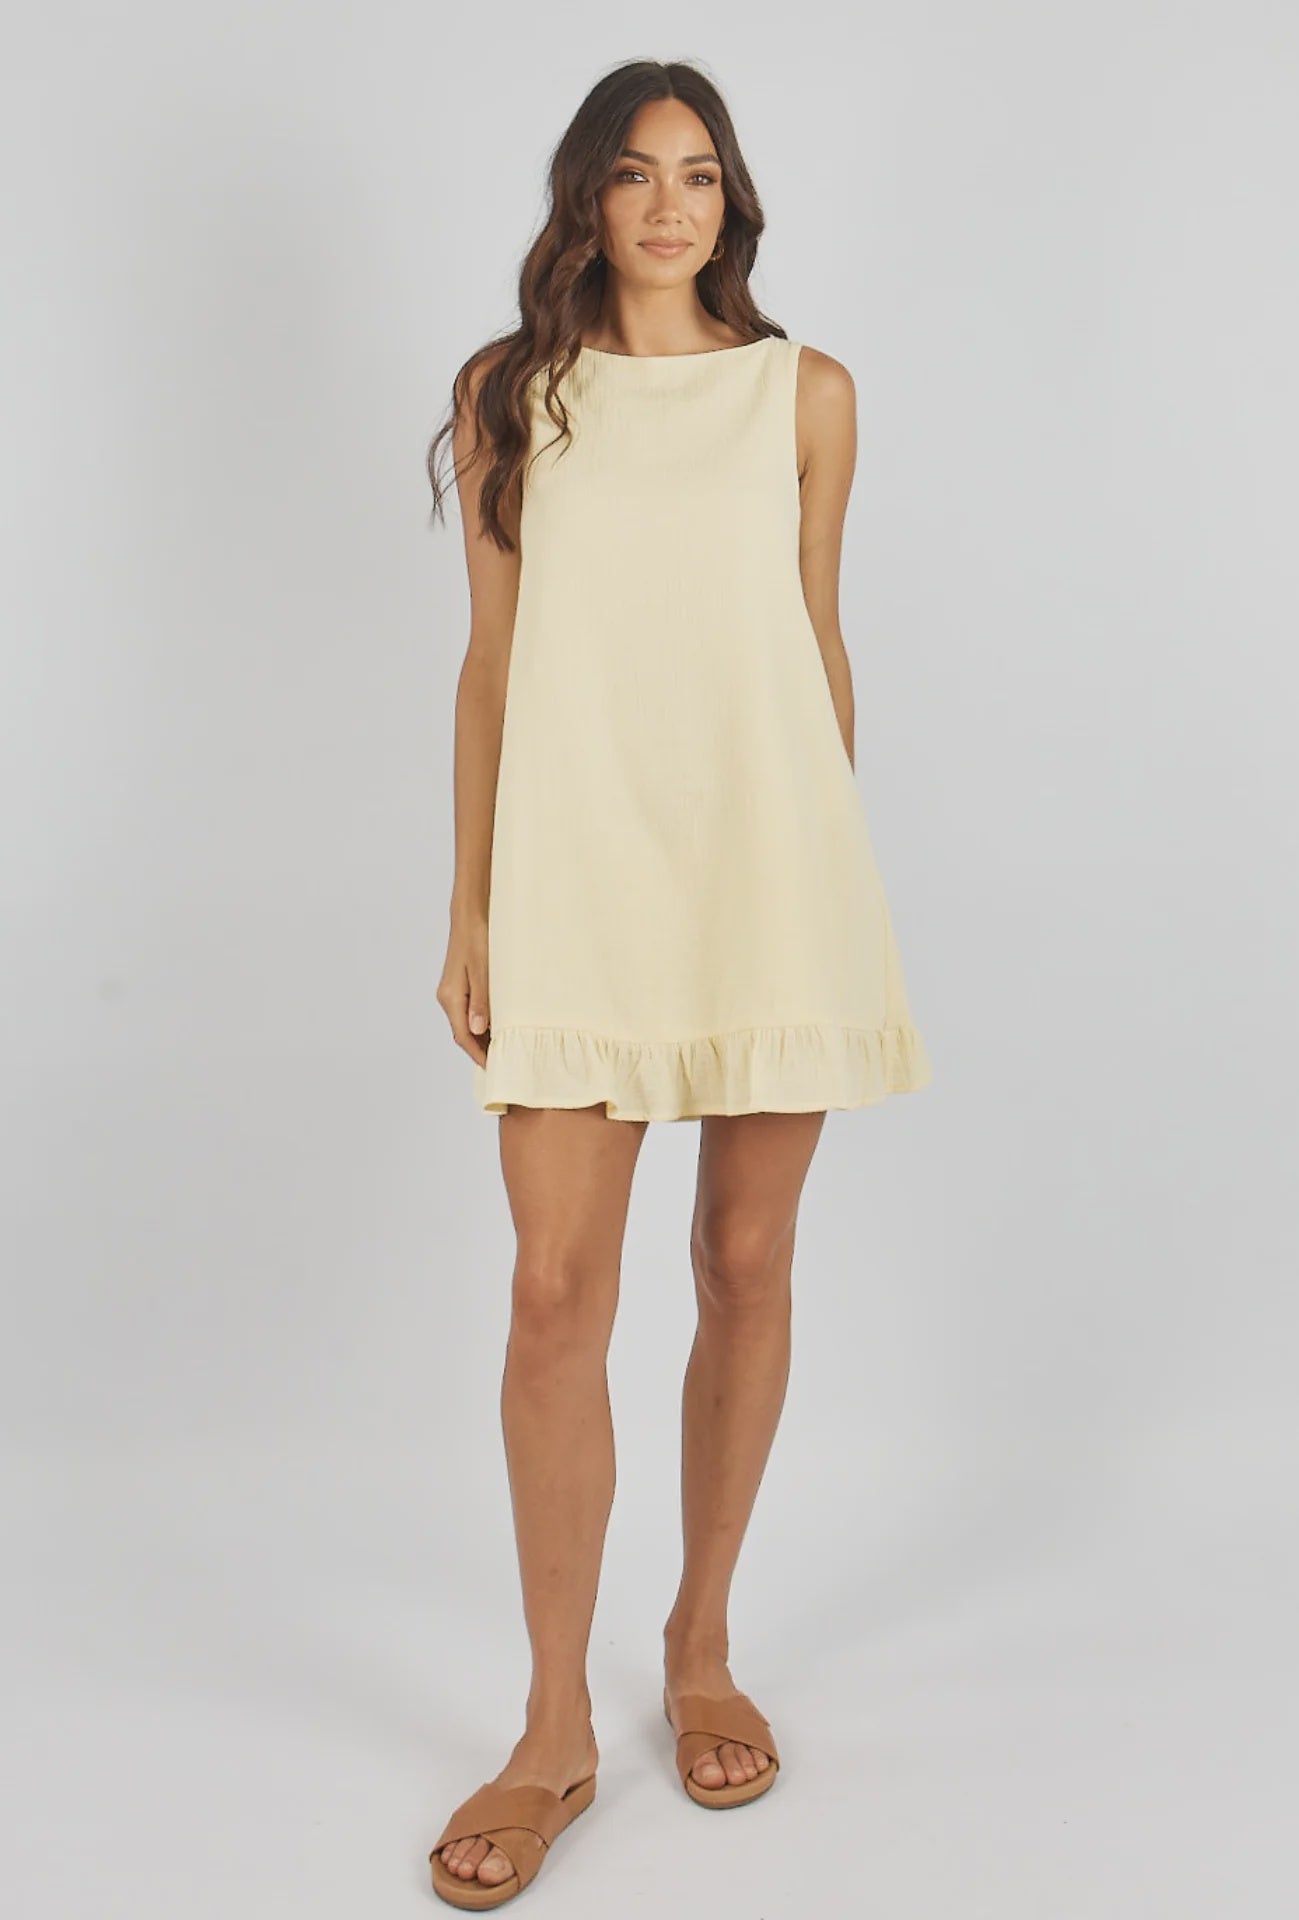 Catarina Mini Dress Lemon